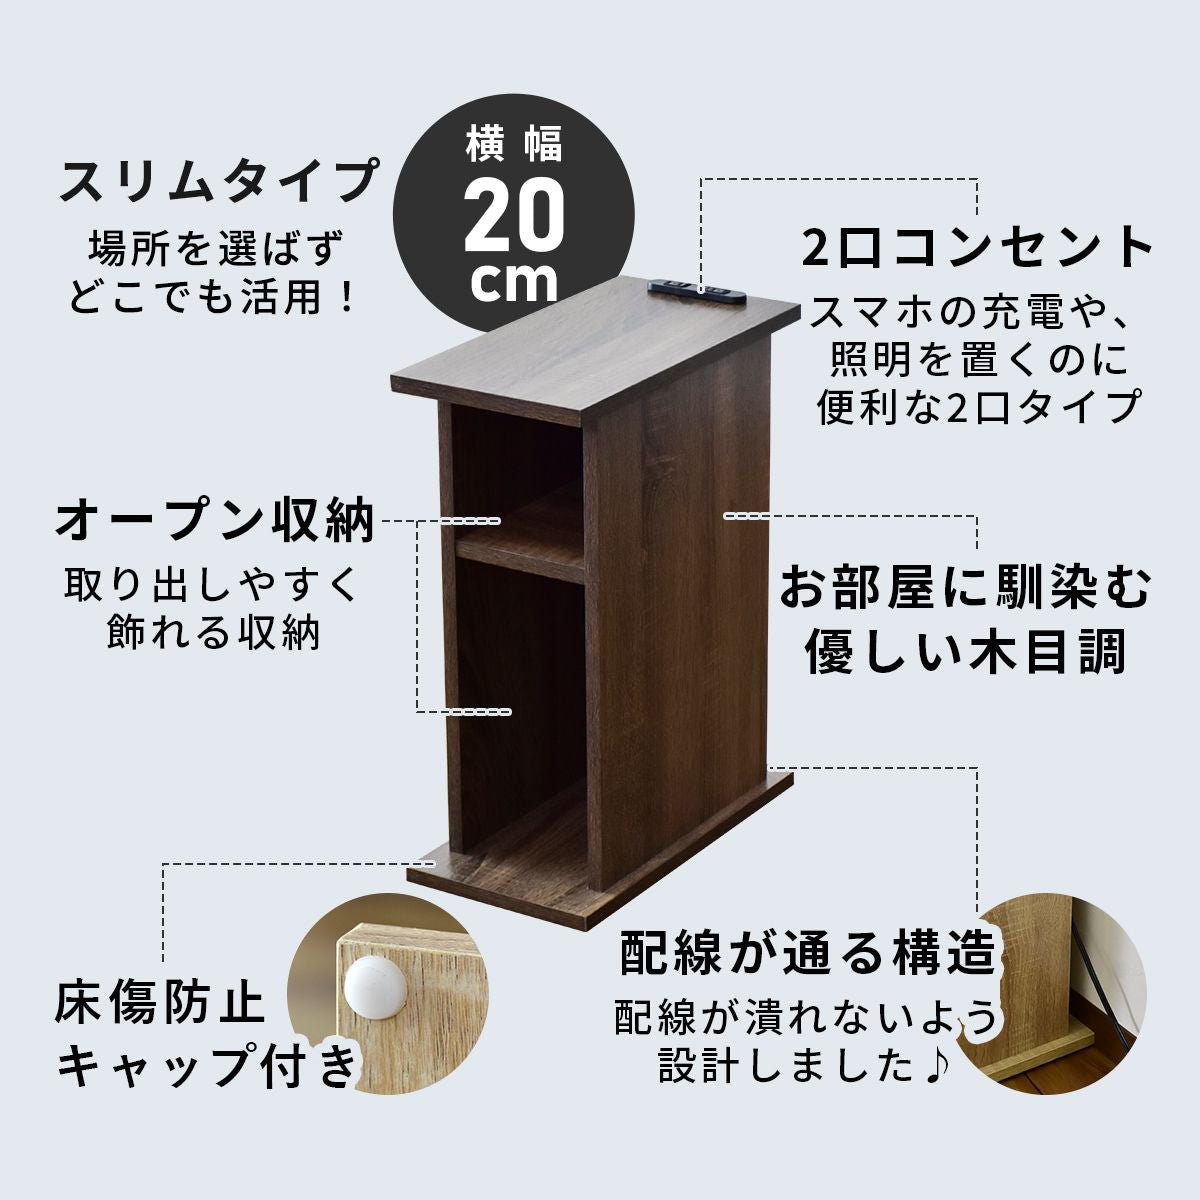 【幅20】 サイドテーブル ライラオープン20cm